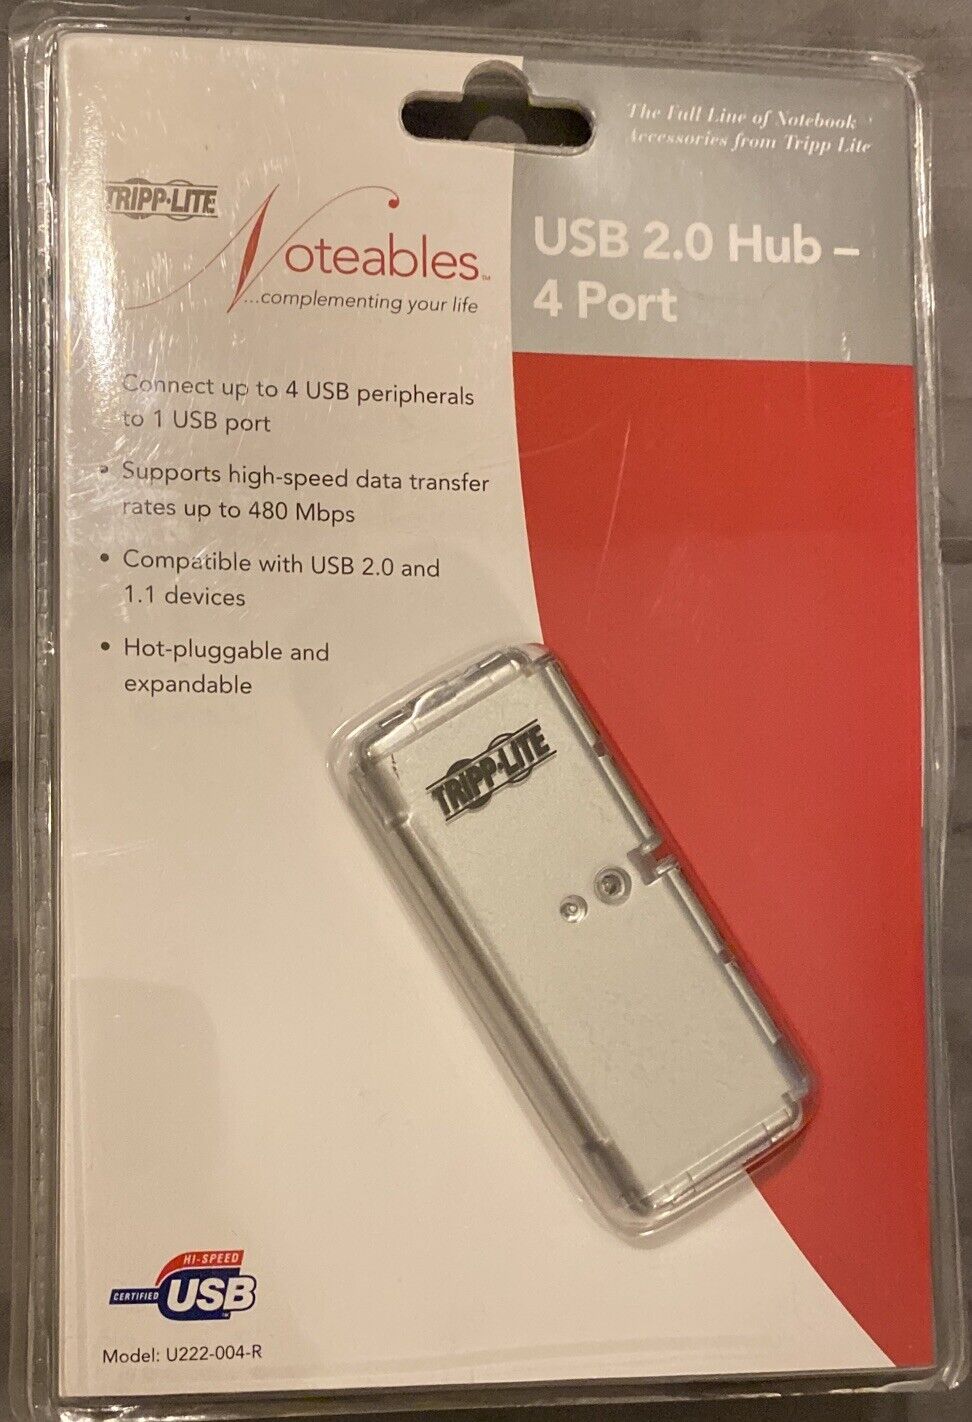 TRIPP-LITE USB 2.0 Hub 4 Ports Includes Power Adapter New Open Box U222-044-R